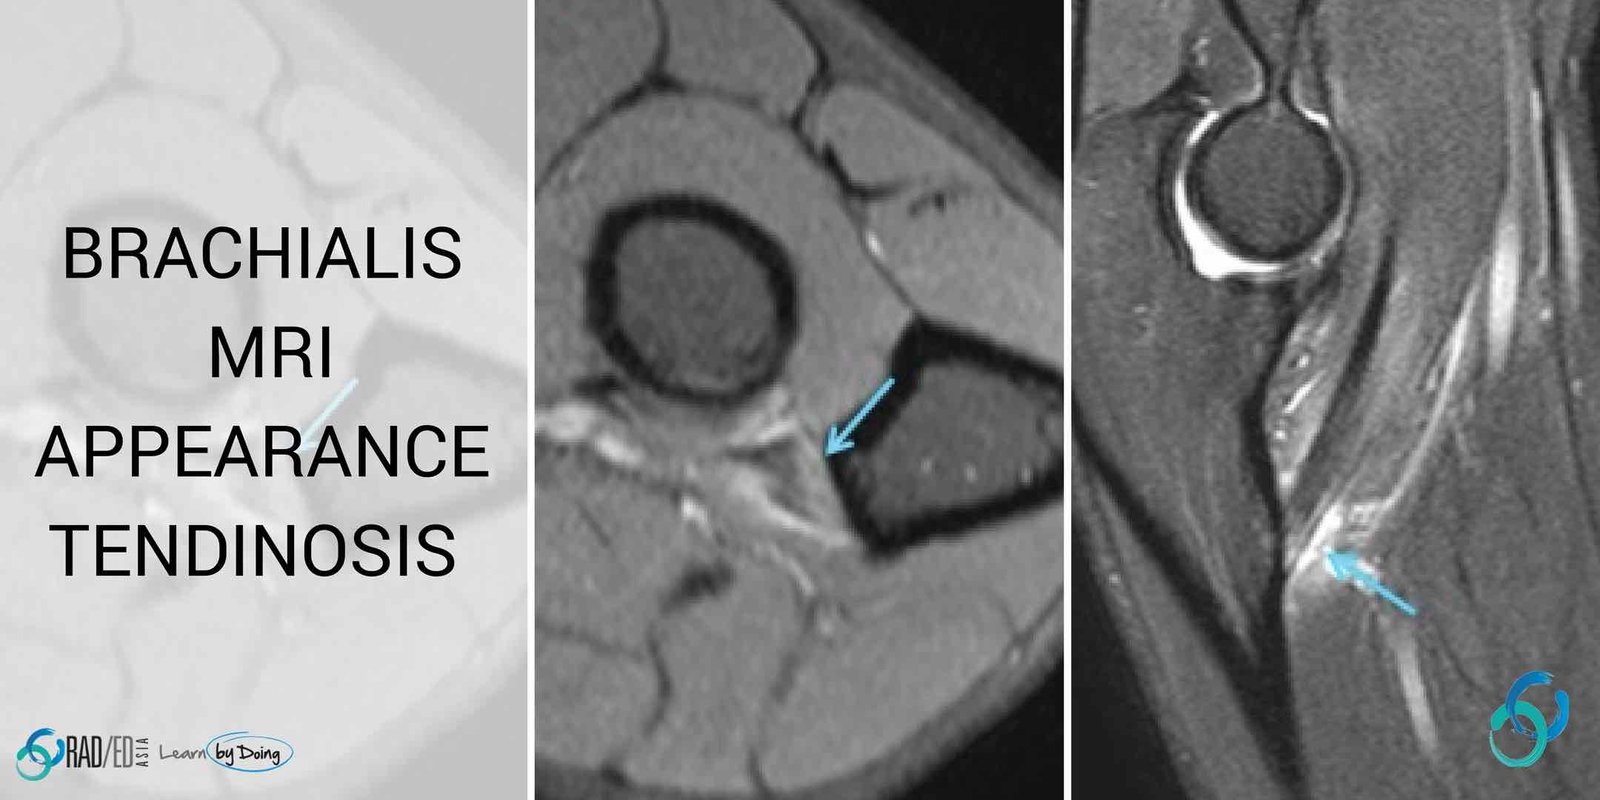 elbow mri brachialis tendon tears tendinosis radiology education asia